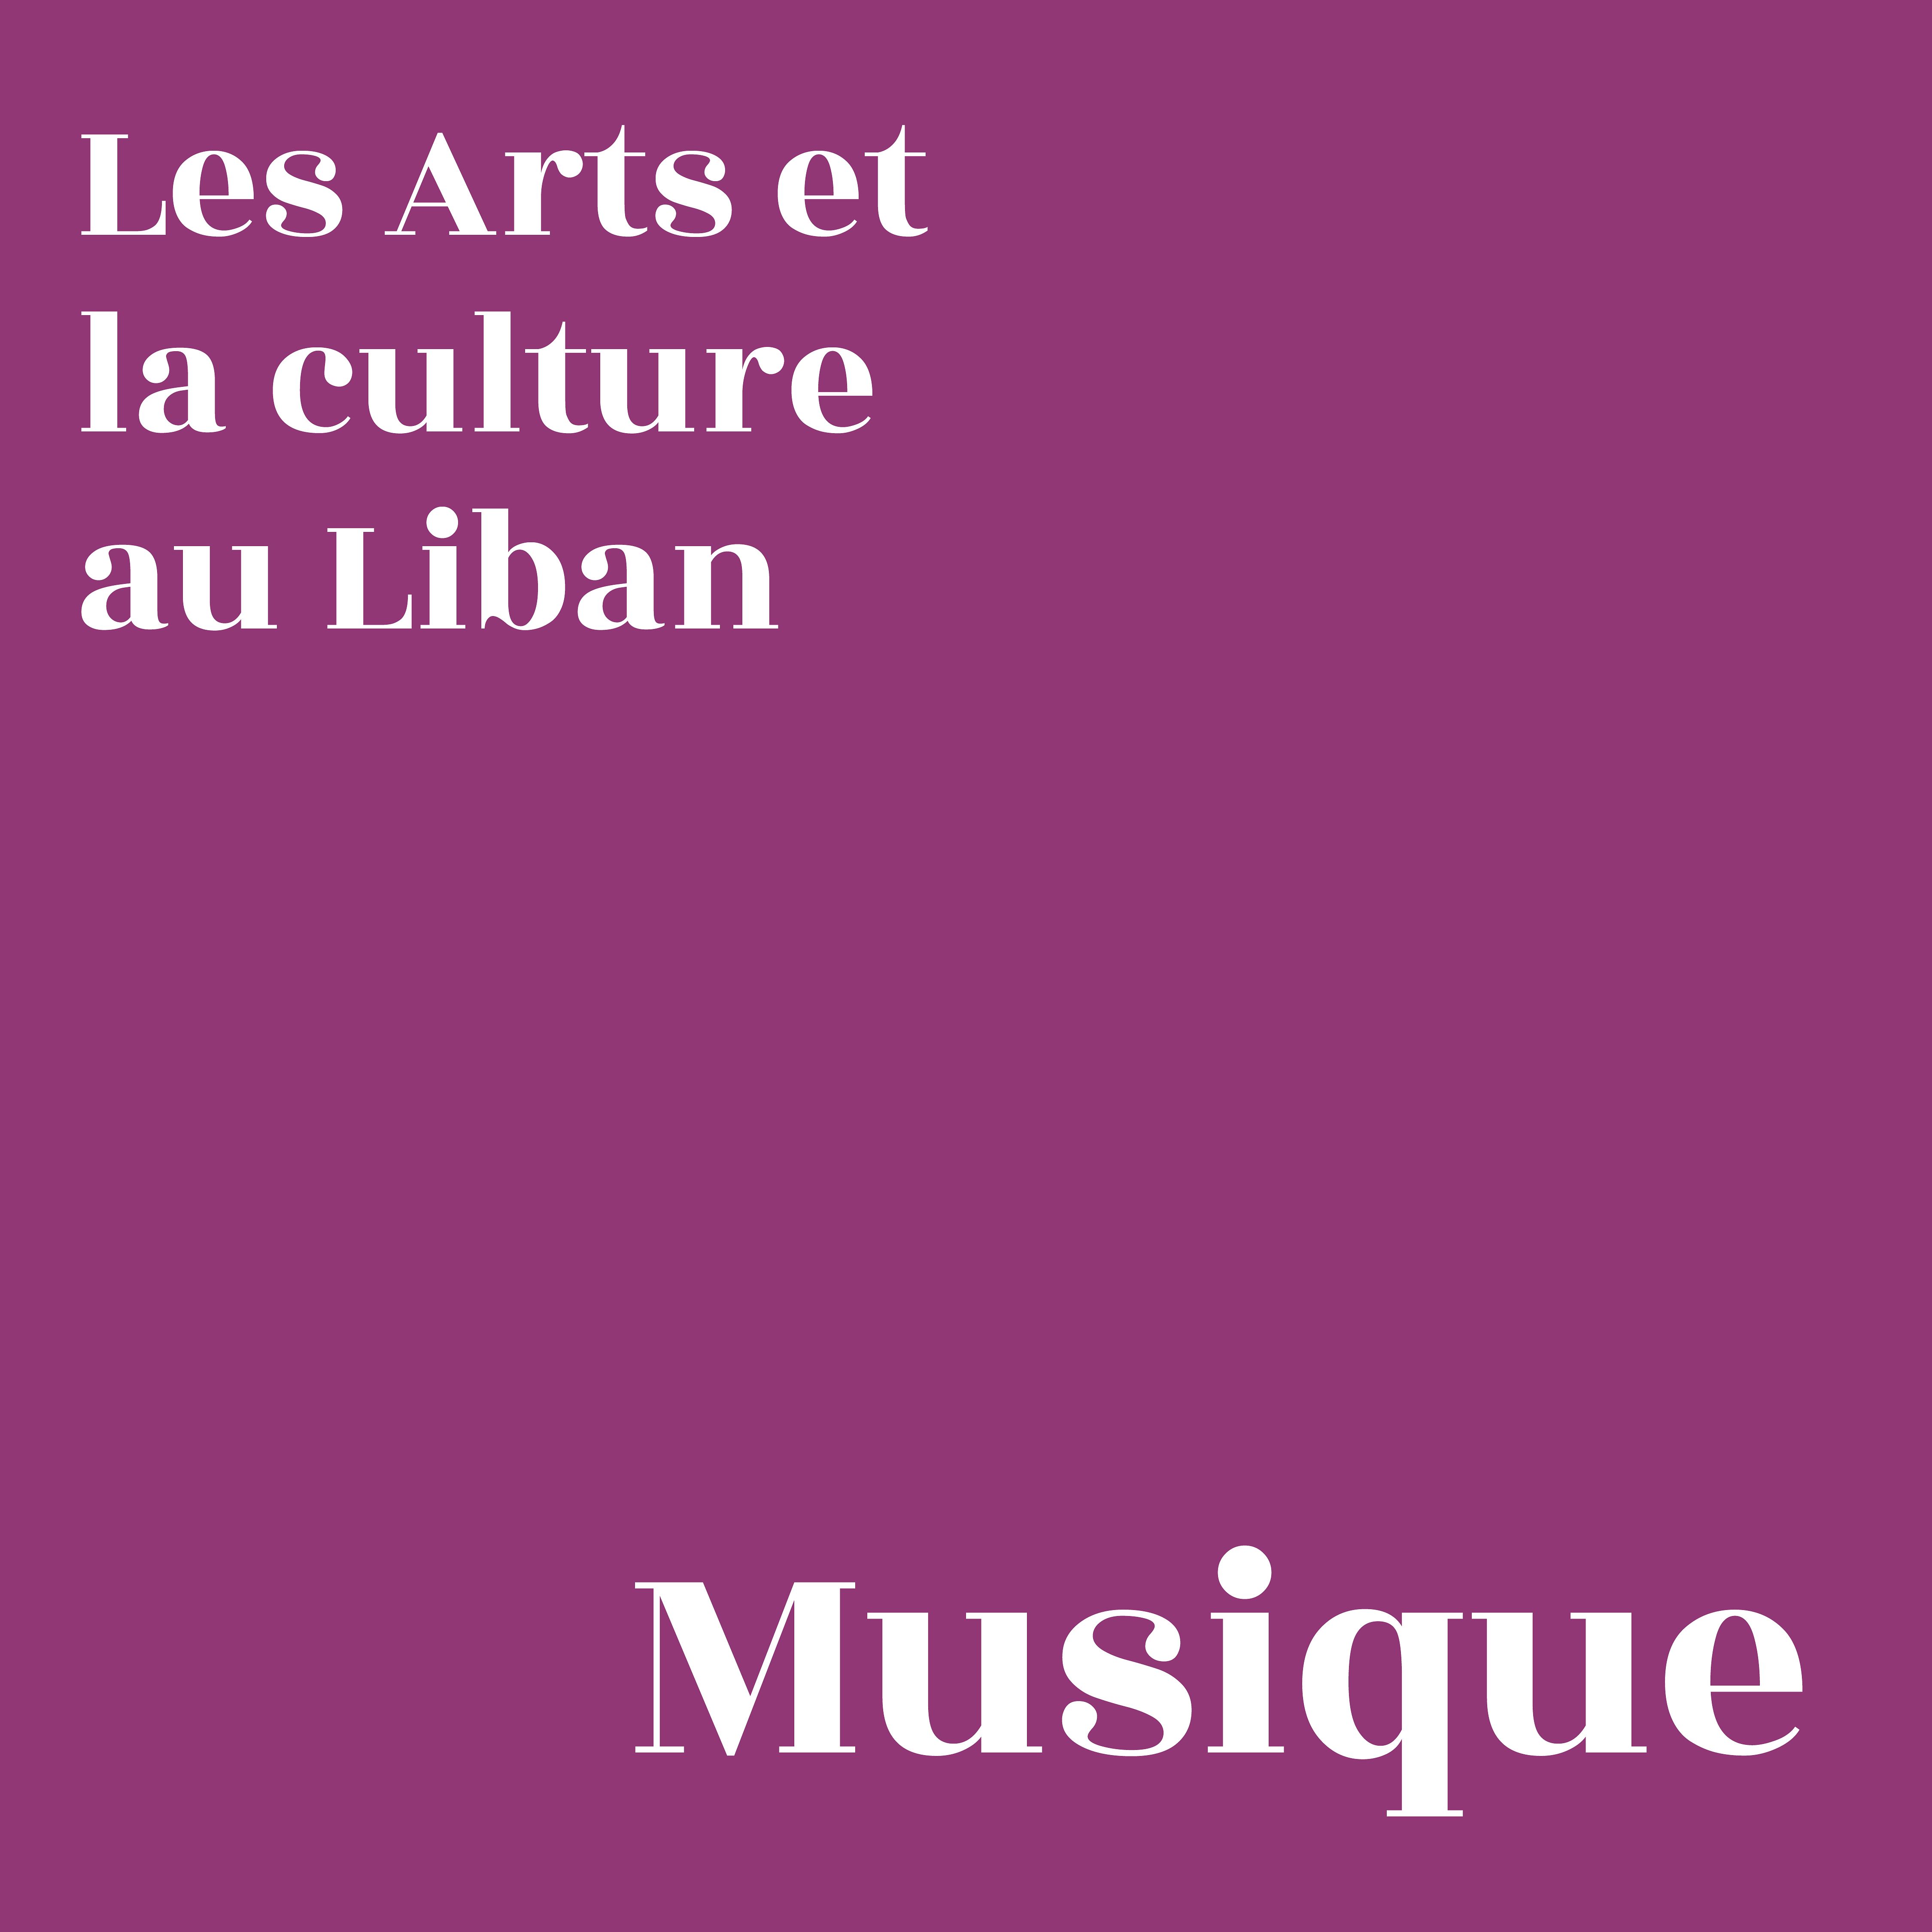 Les arts et la culture au Liban : Musique thumbnail